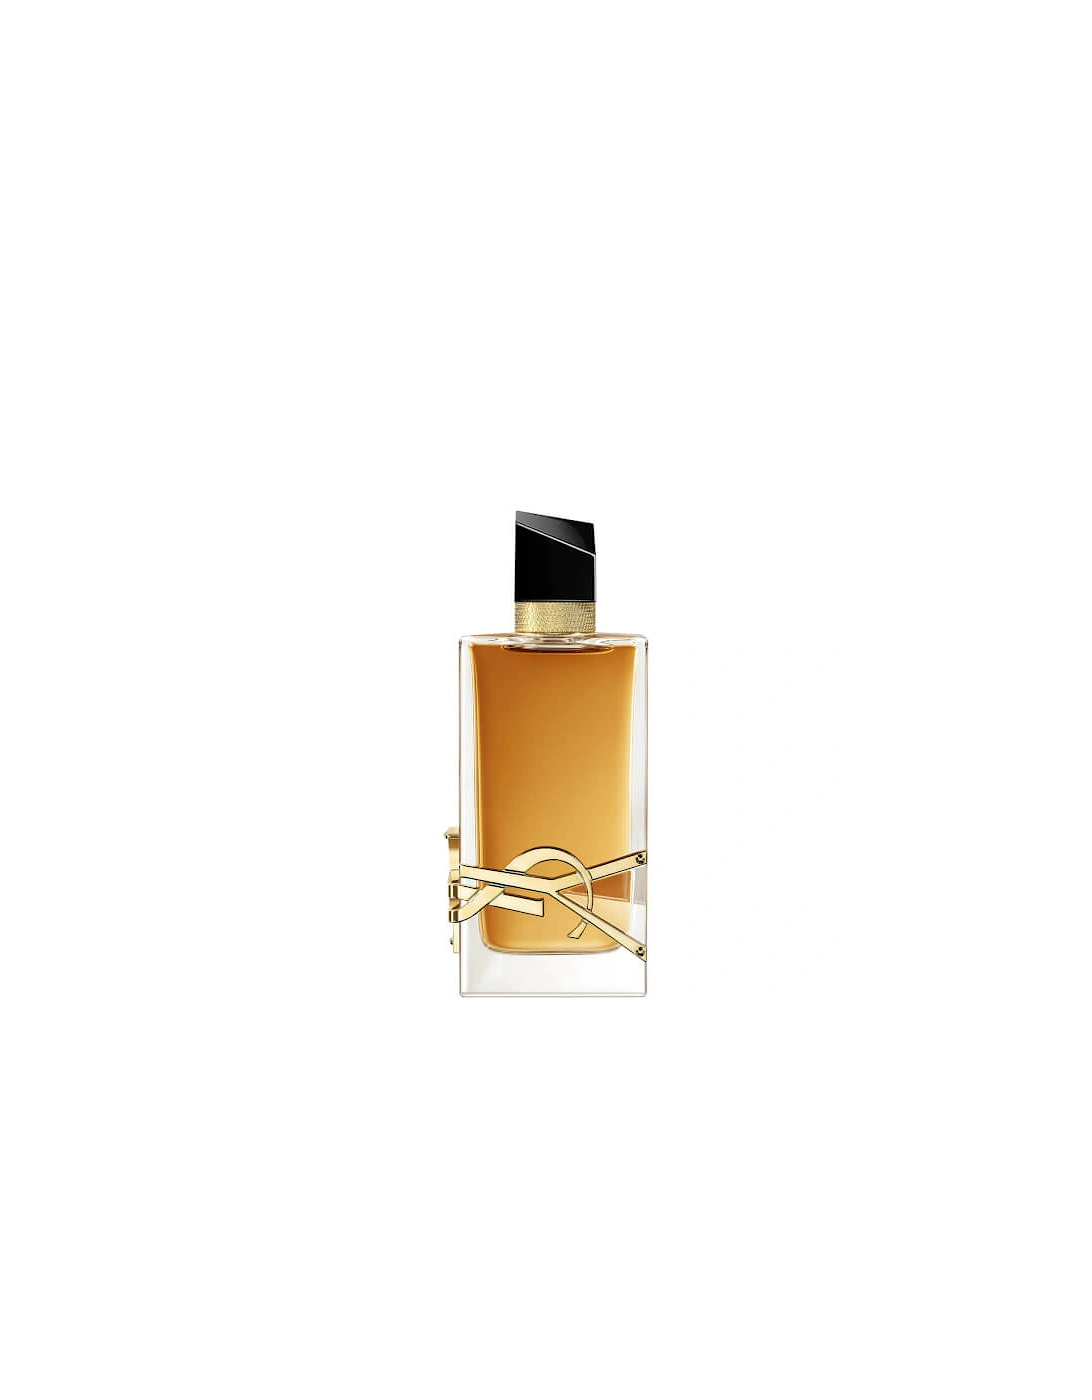 Yves Saint Laurent Libre Intense Eau de Parfum 90ml, 2 of 1